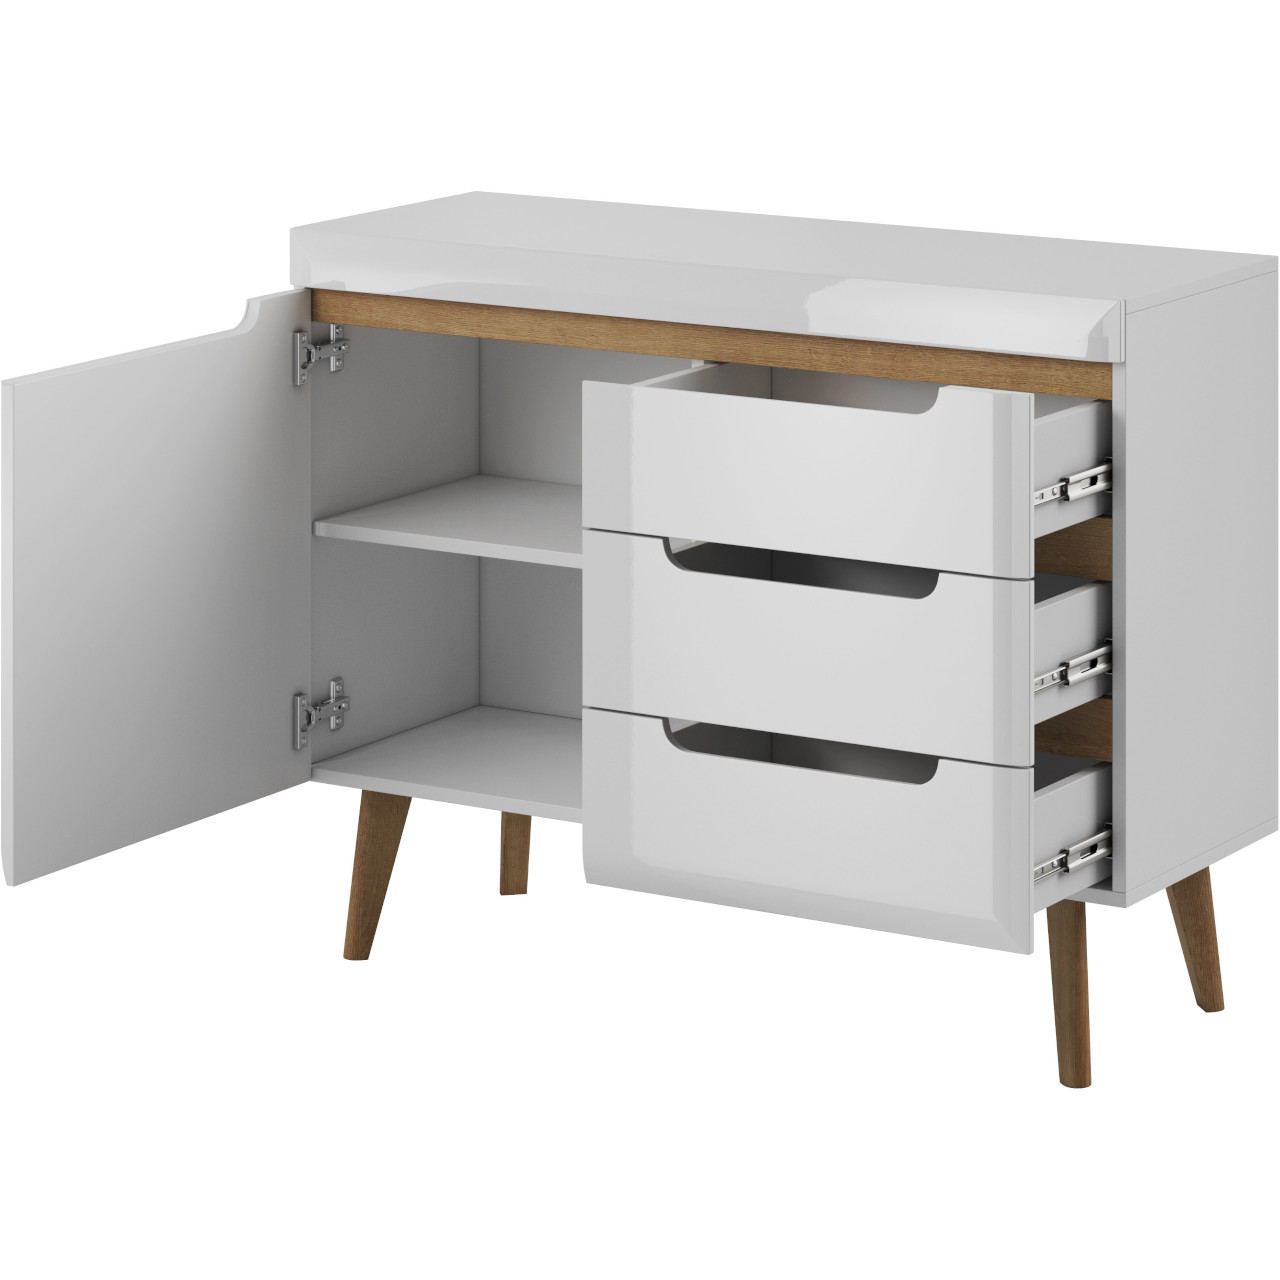 Storage cabinet NARDI 07 white gloss / riviera oak